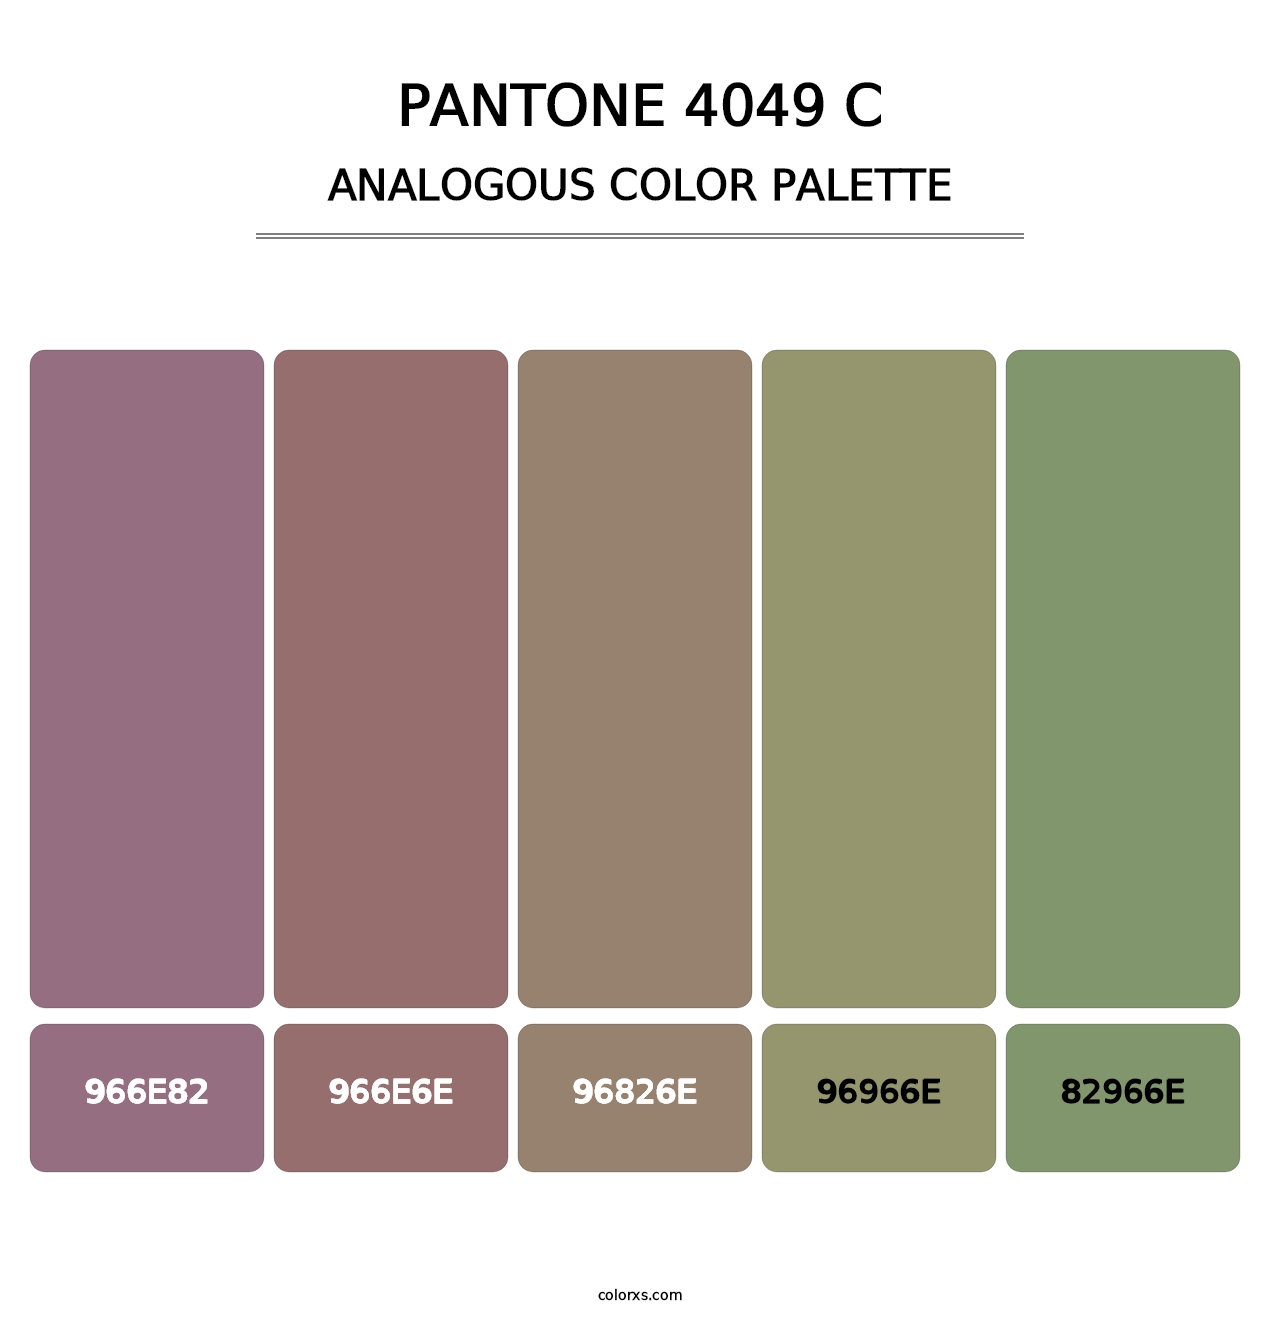 PANTONE 4049 C - Analogous Color Palette